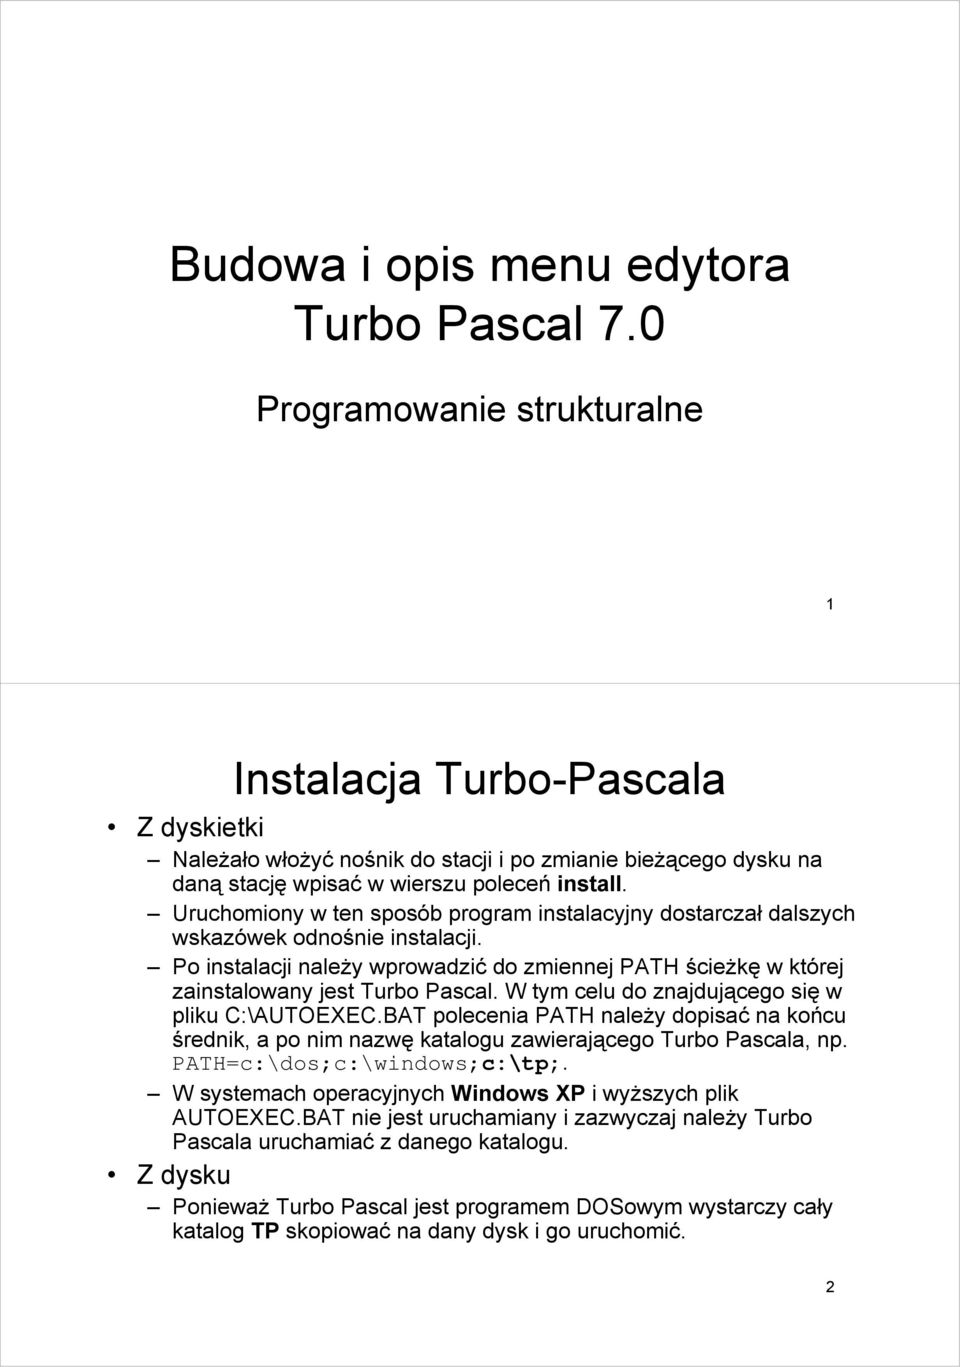 Uruchomiony w ten sposób program instalacyjny dostarczał dalszych wskazówek odnośnie instalacji. Po instalacji należy wprowadzić do zmiennej PATH ścieżkę w której zainstalowany jest Turbo Pascal.